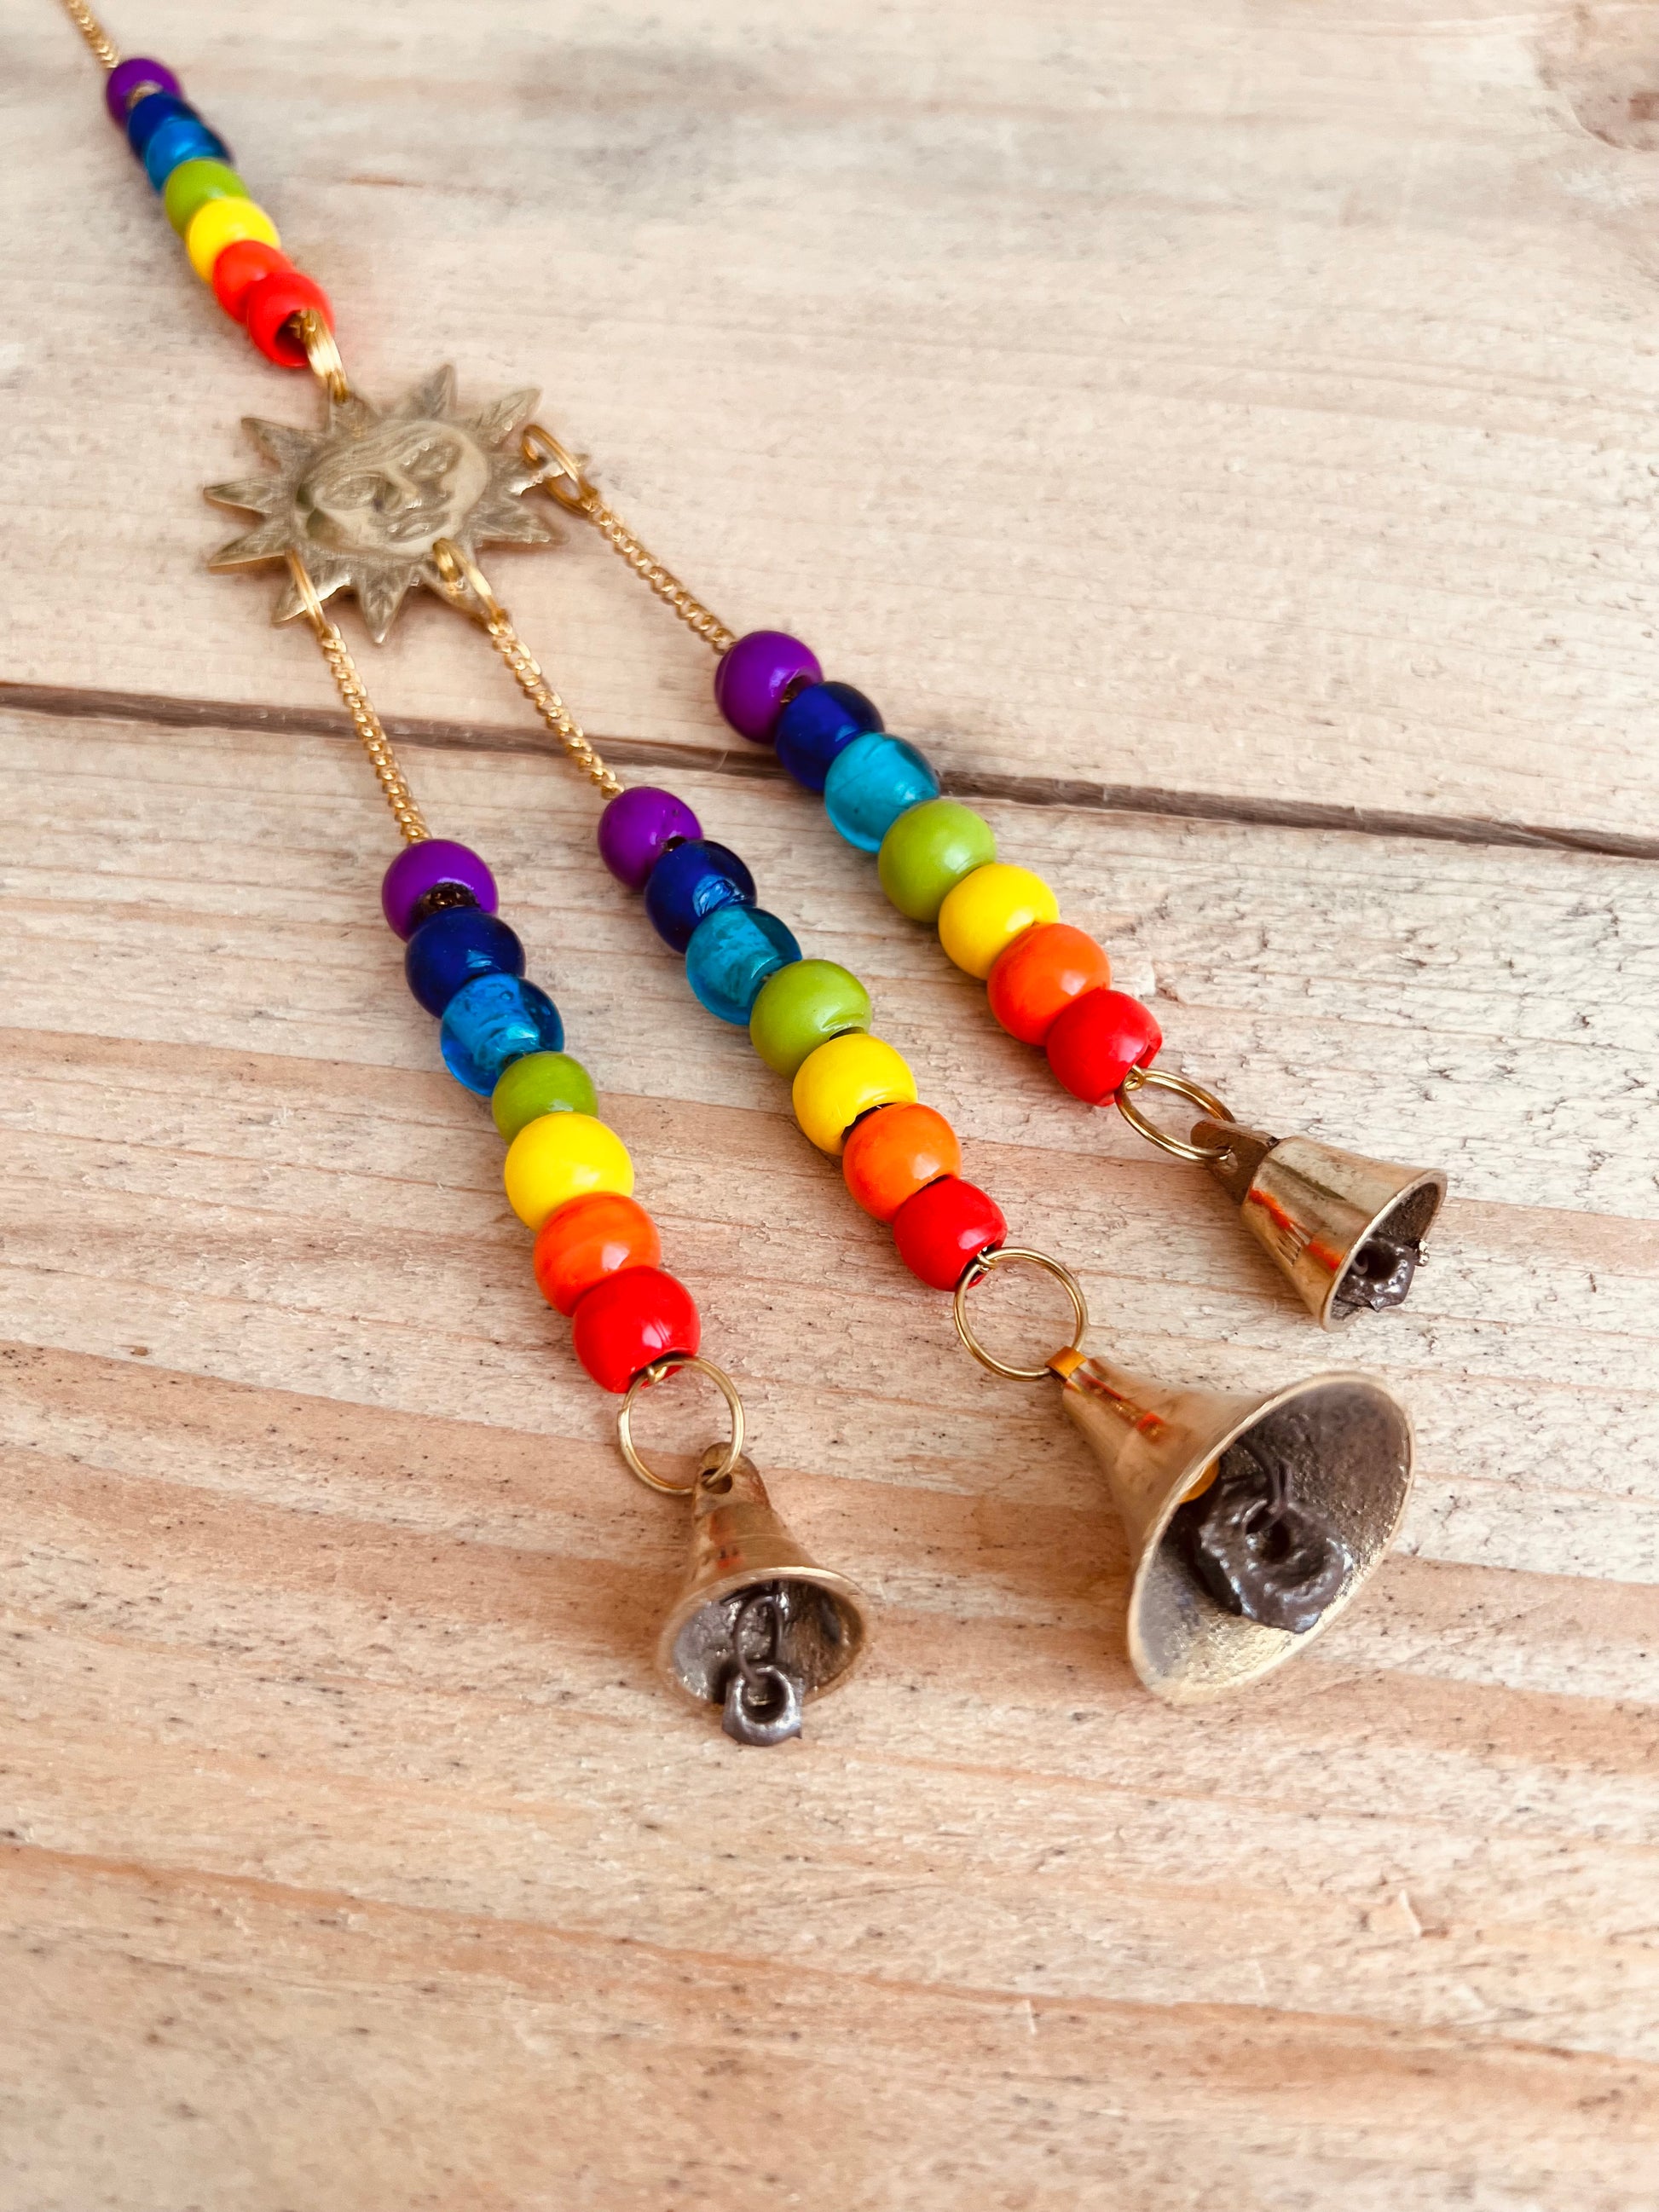 Handmade & Fair Trade Chakra Beads, Brass Sun Wind Chime, Hippie Indian Bells